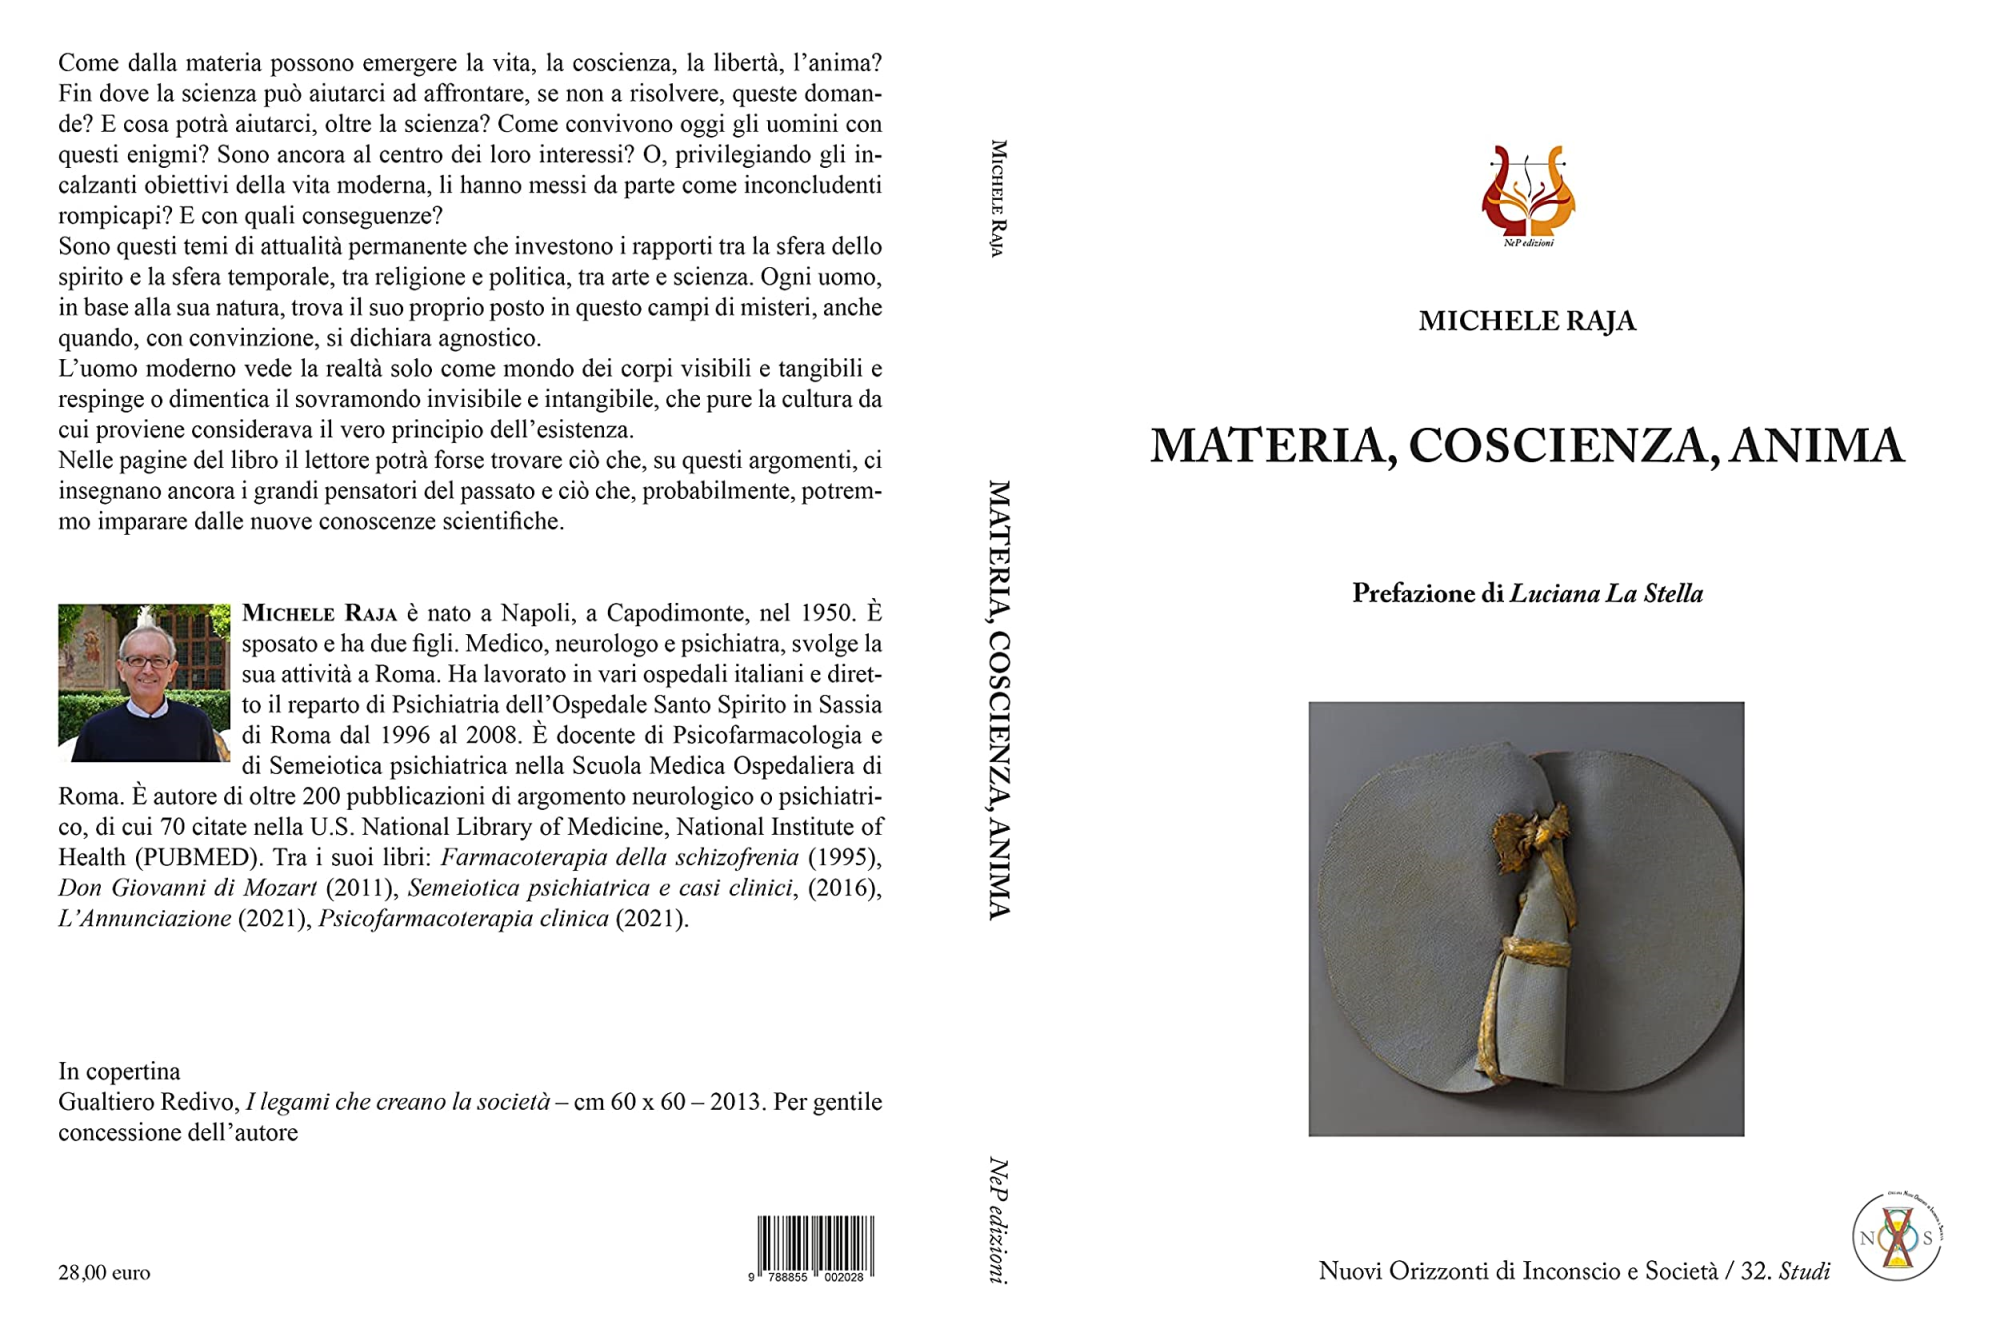 Libri Michele Raja - Materia, Coscienza, Anima NUOVO SIGILLATO, EDIZIONE DEL 22/04/2022 SUBITO DISPONIBILE